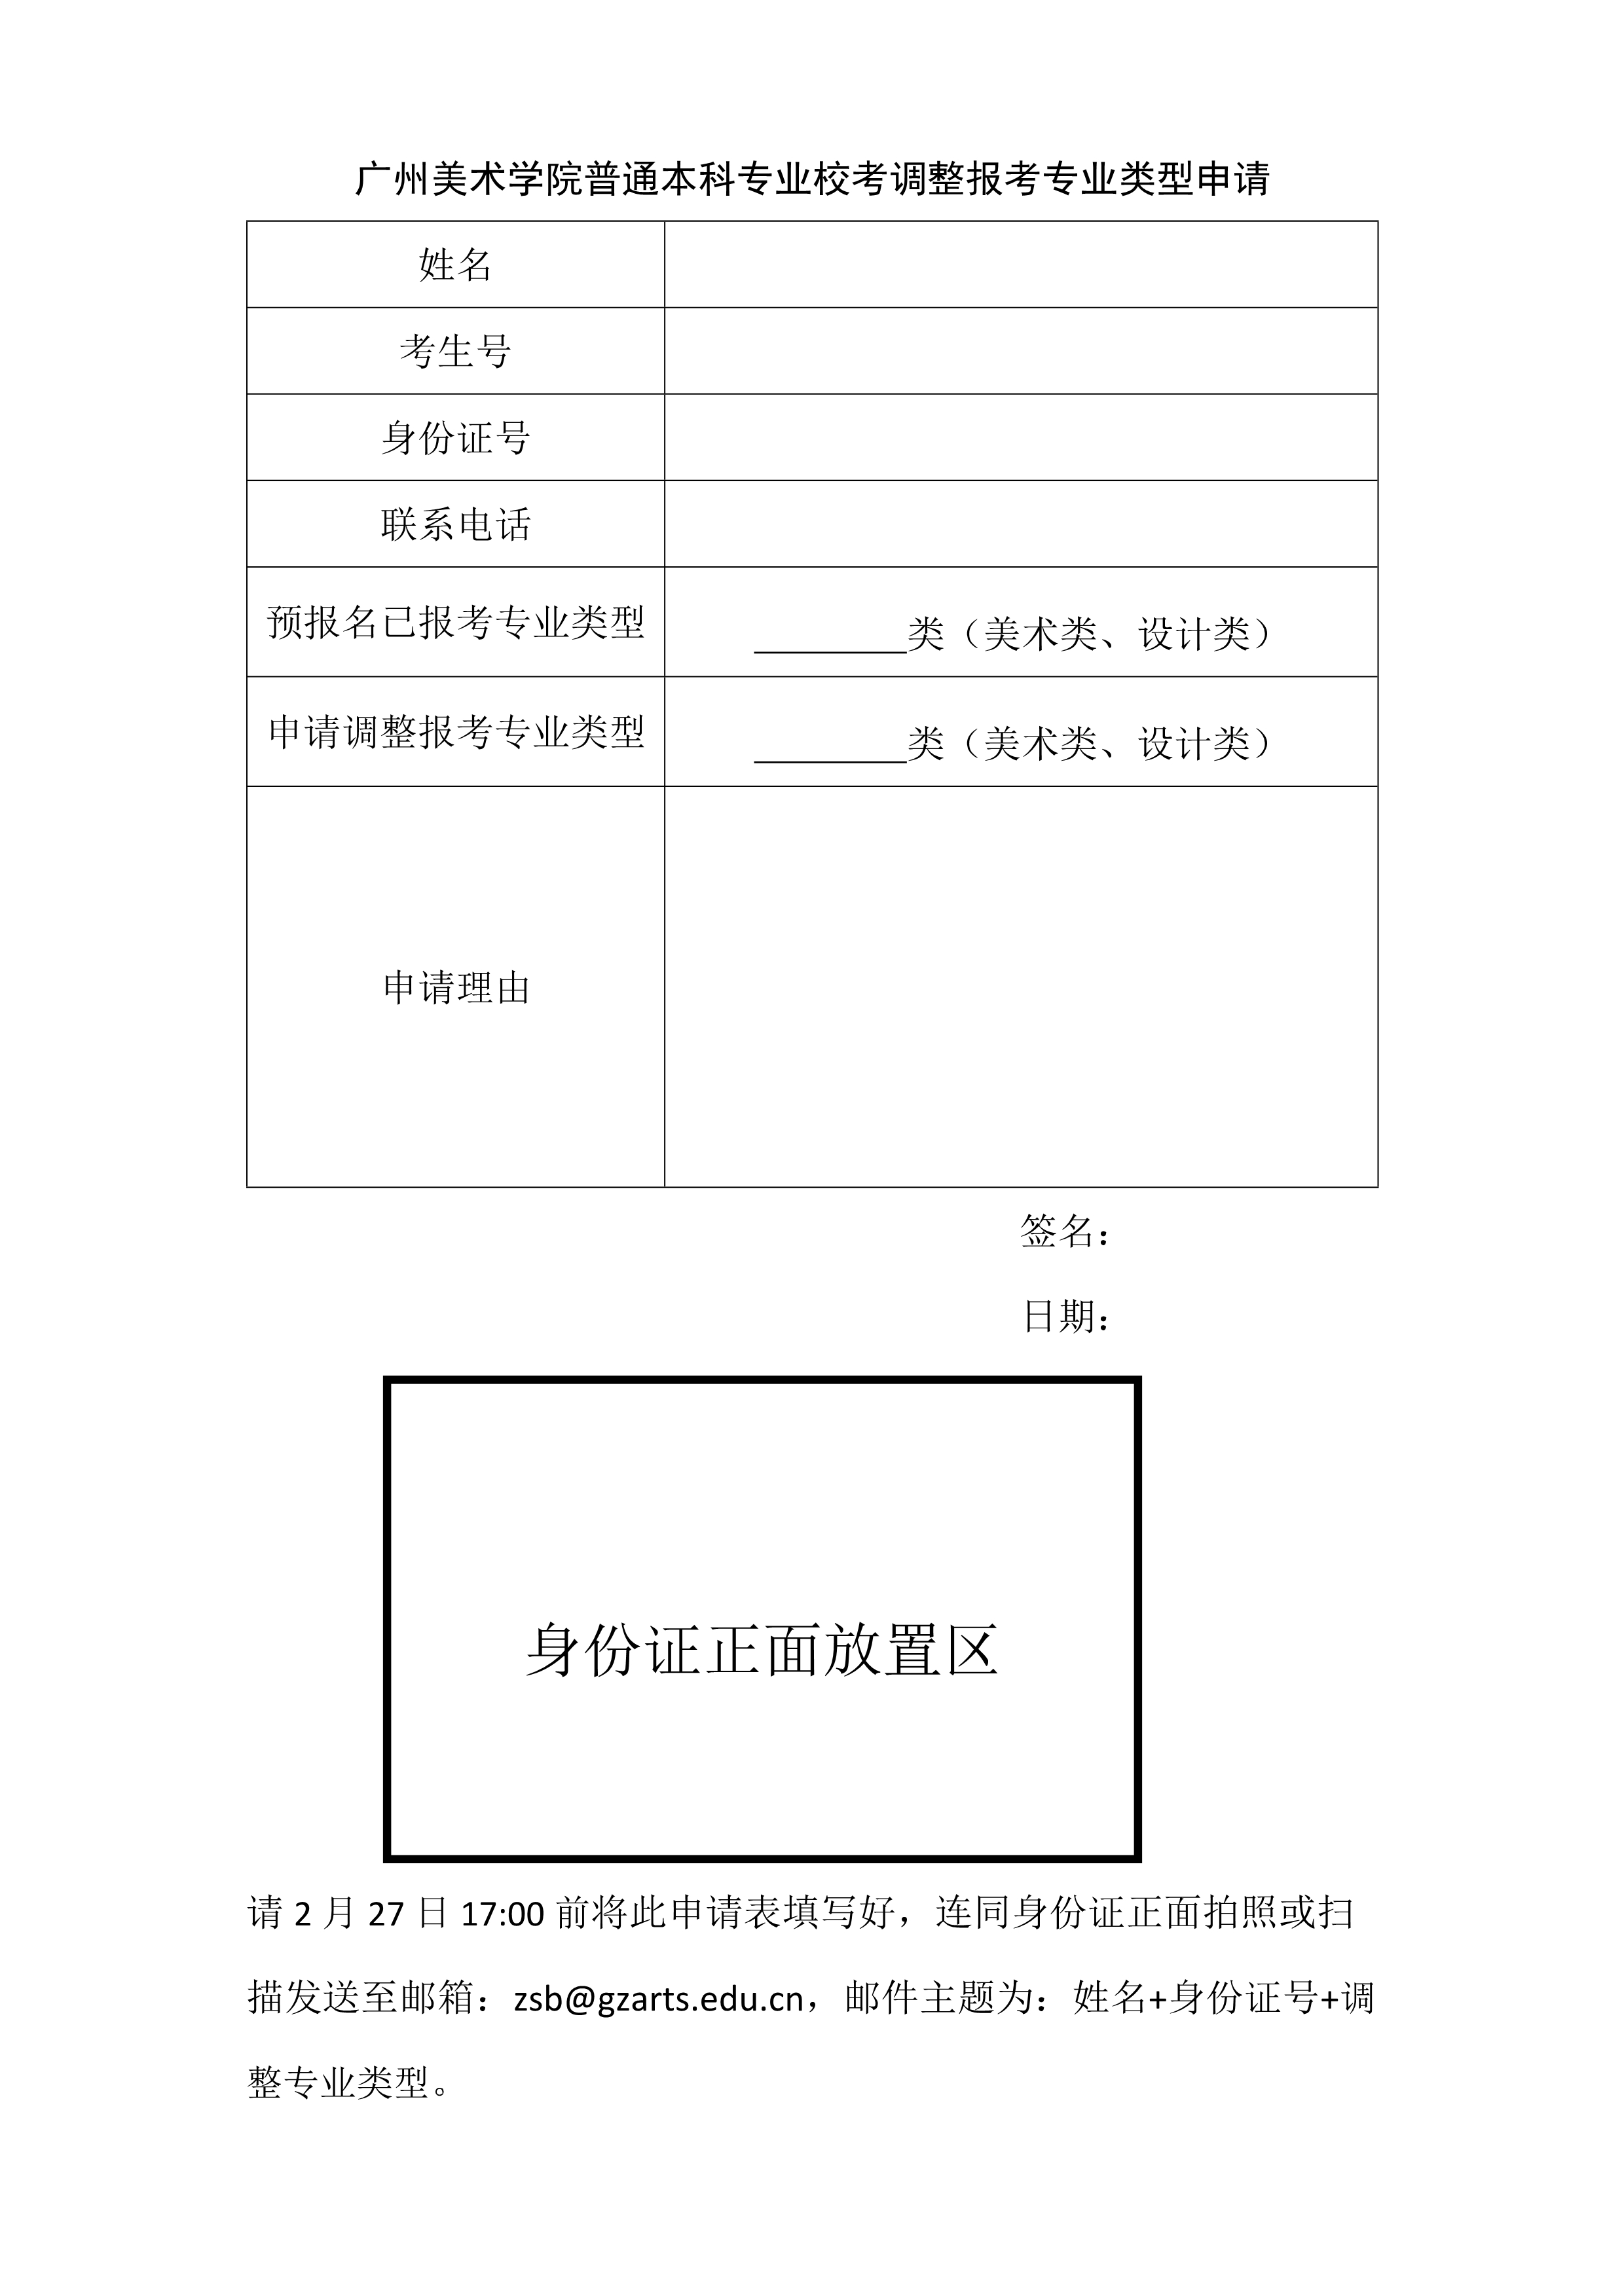 广州美术学院普通本科专业校考调整报考专业类型申请_1.jpg